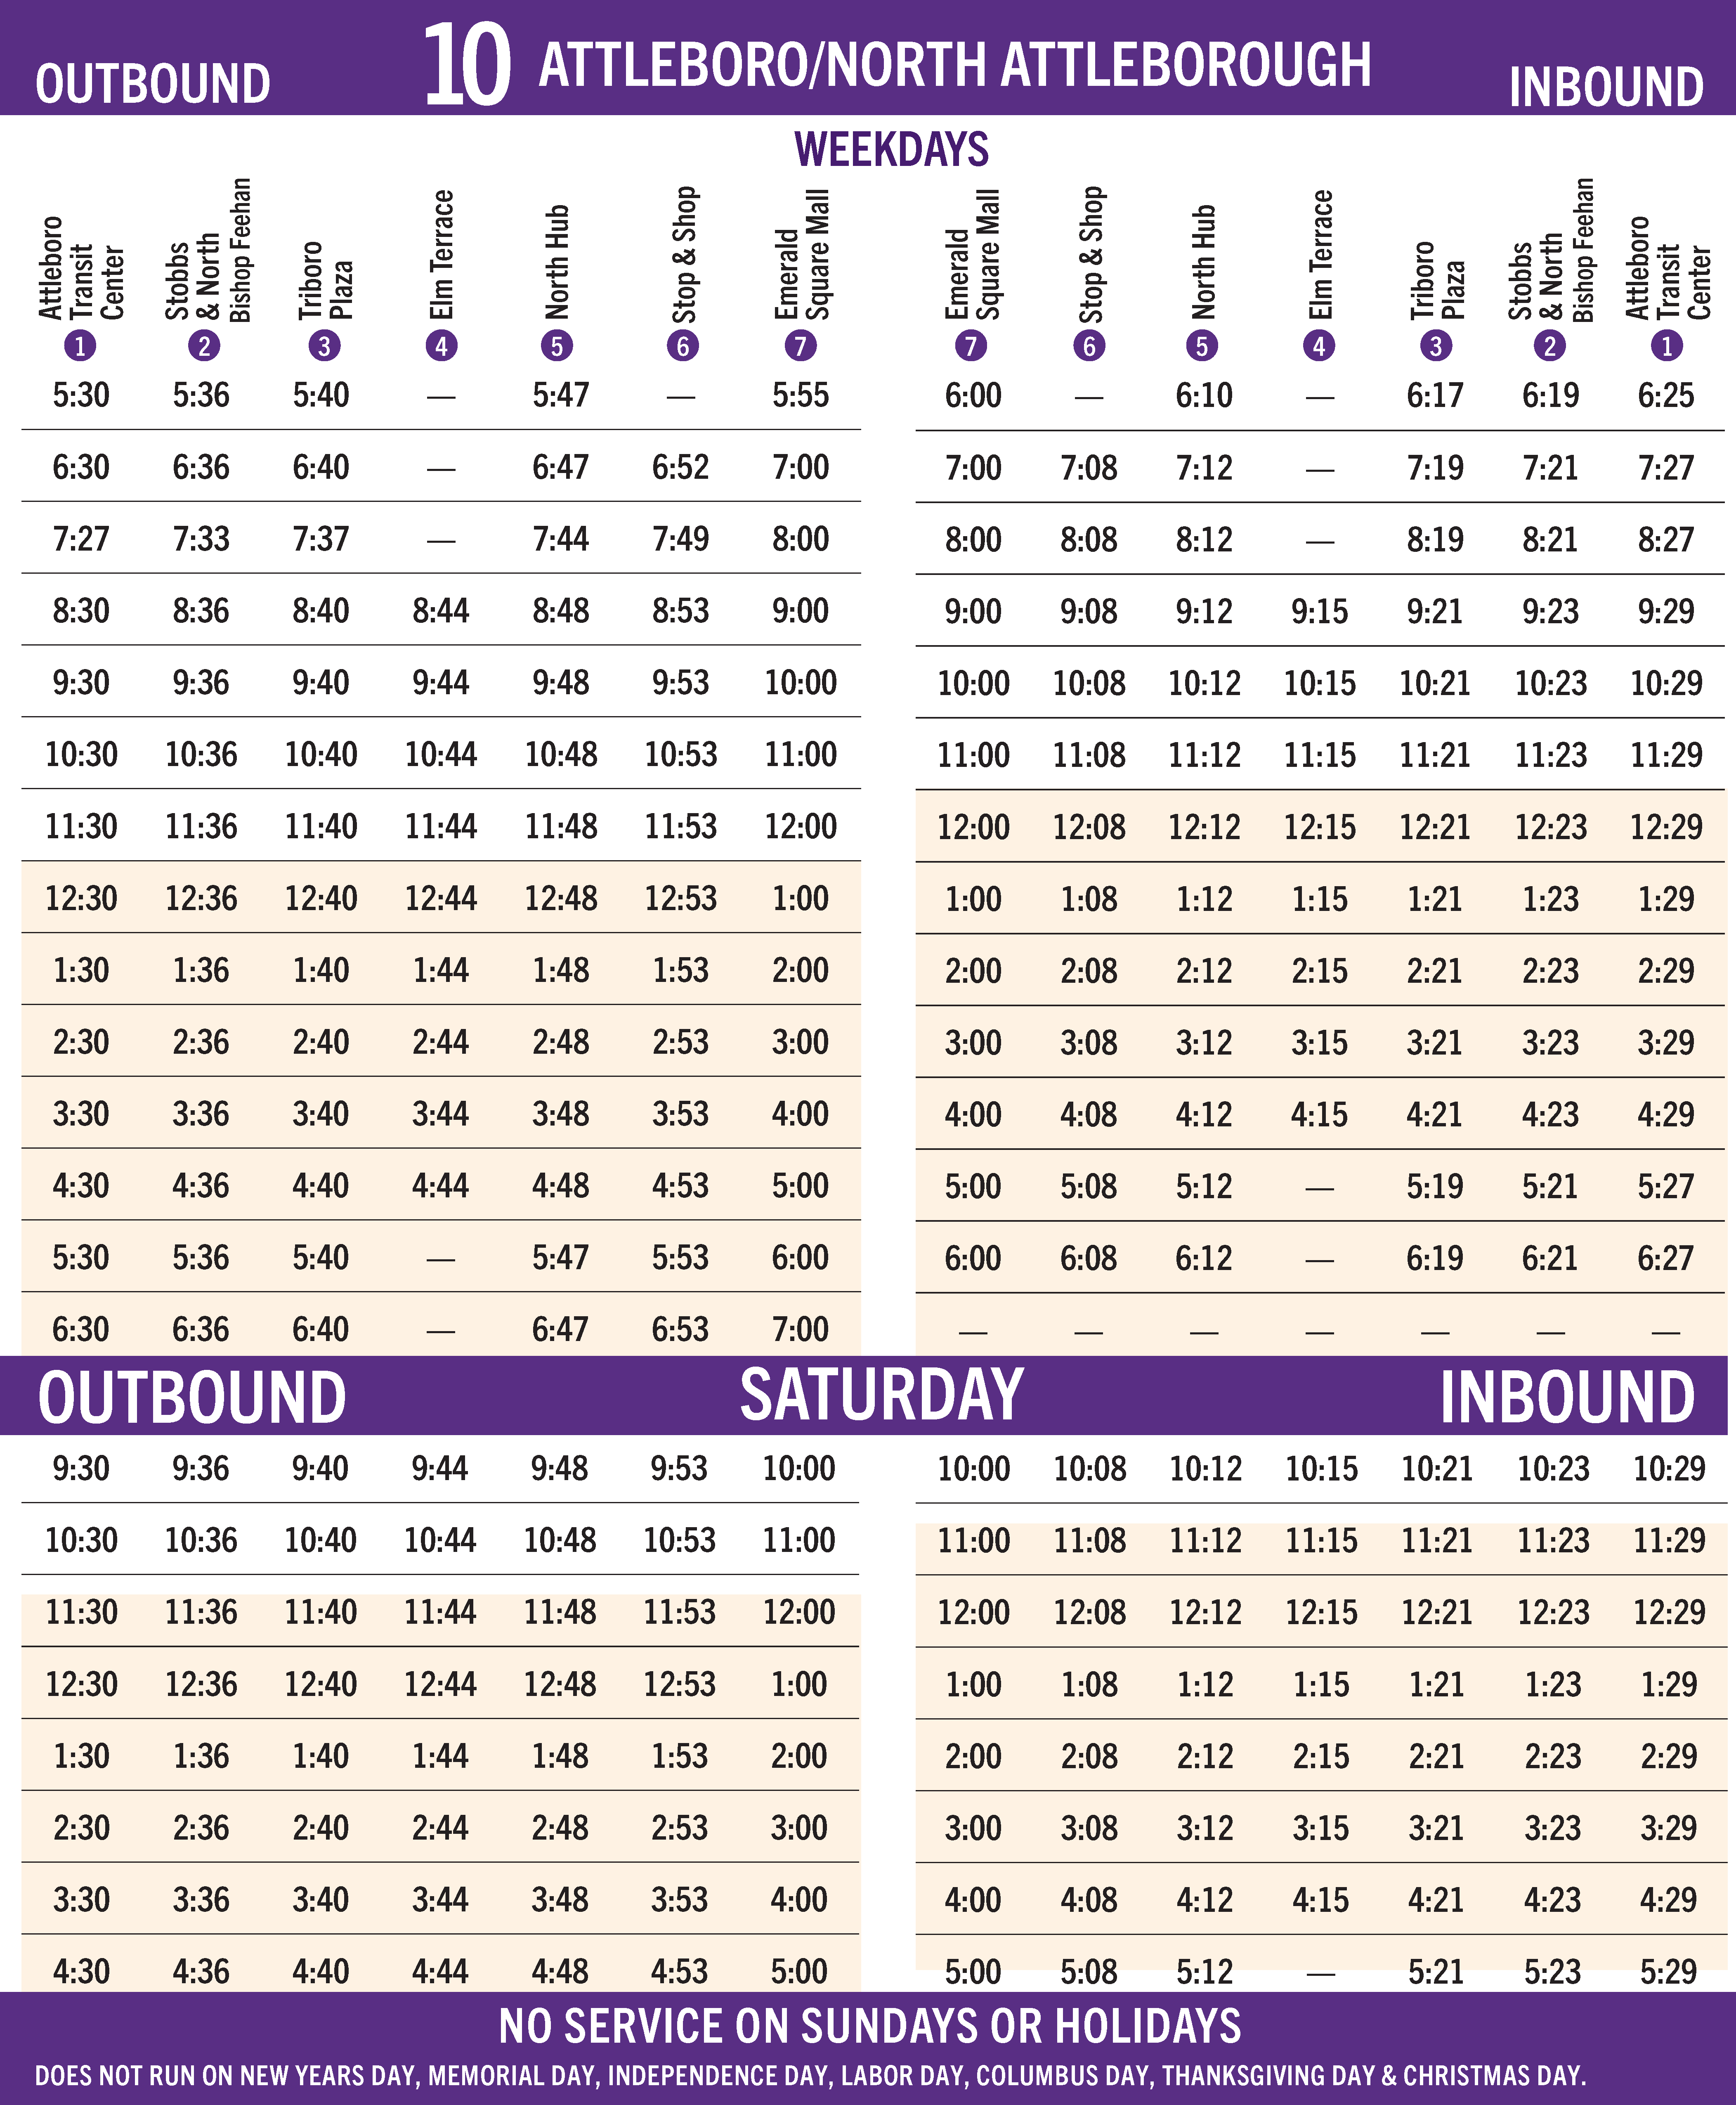 GATRA Route 10 Timetable